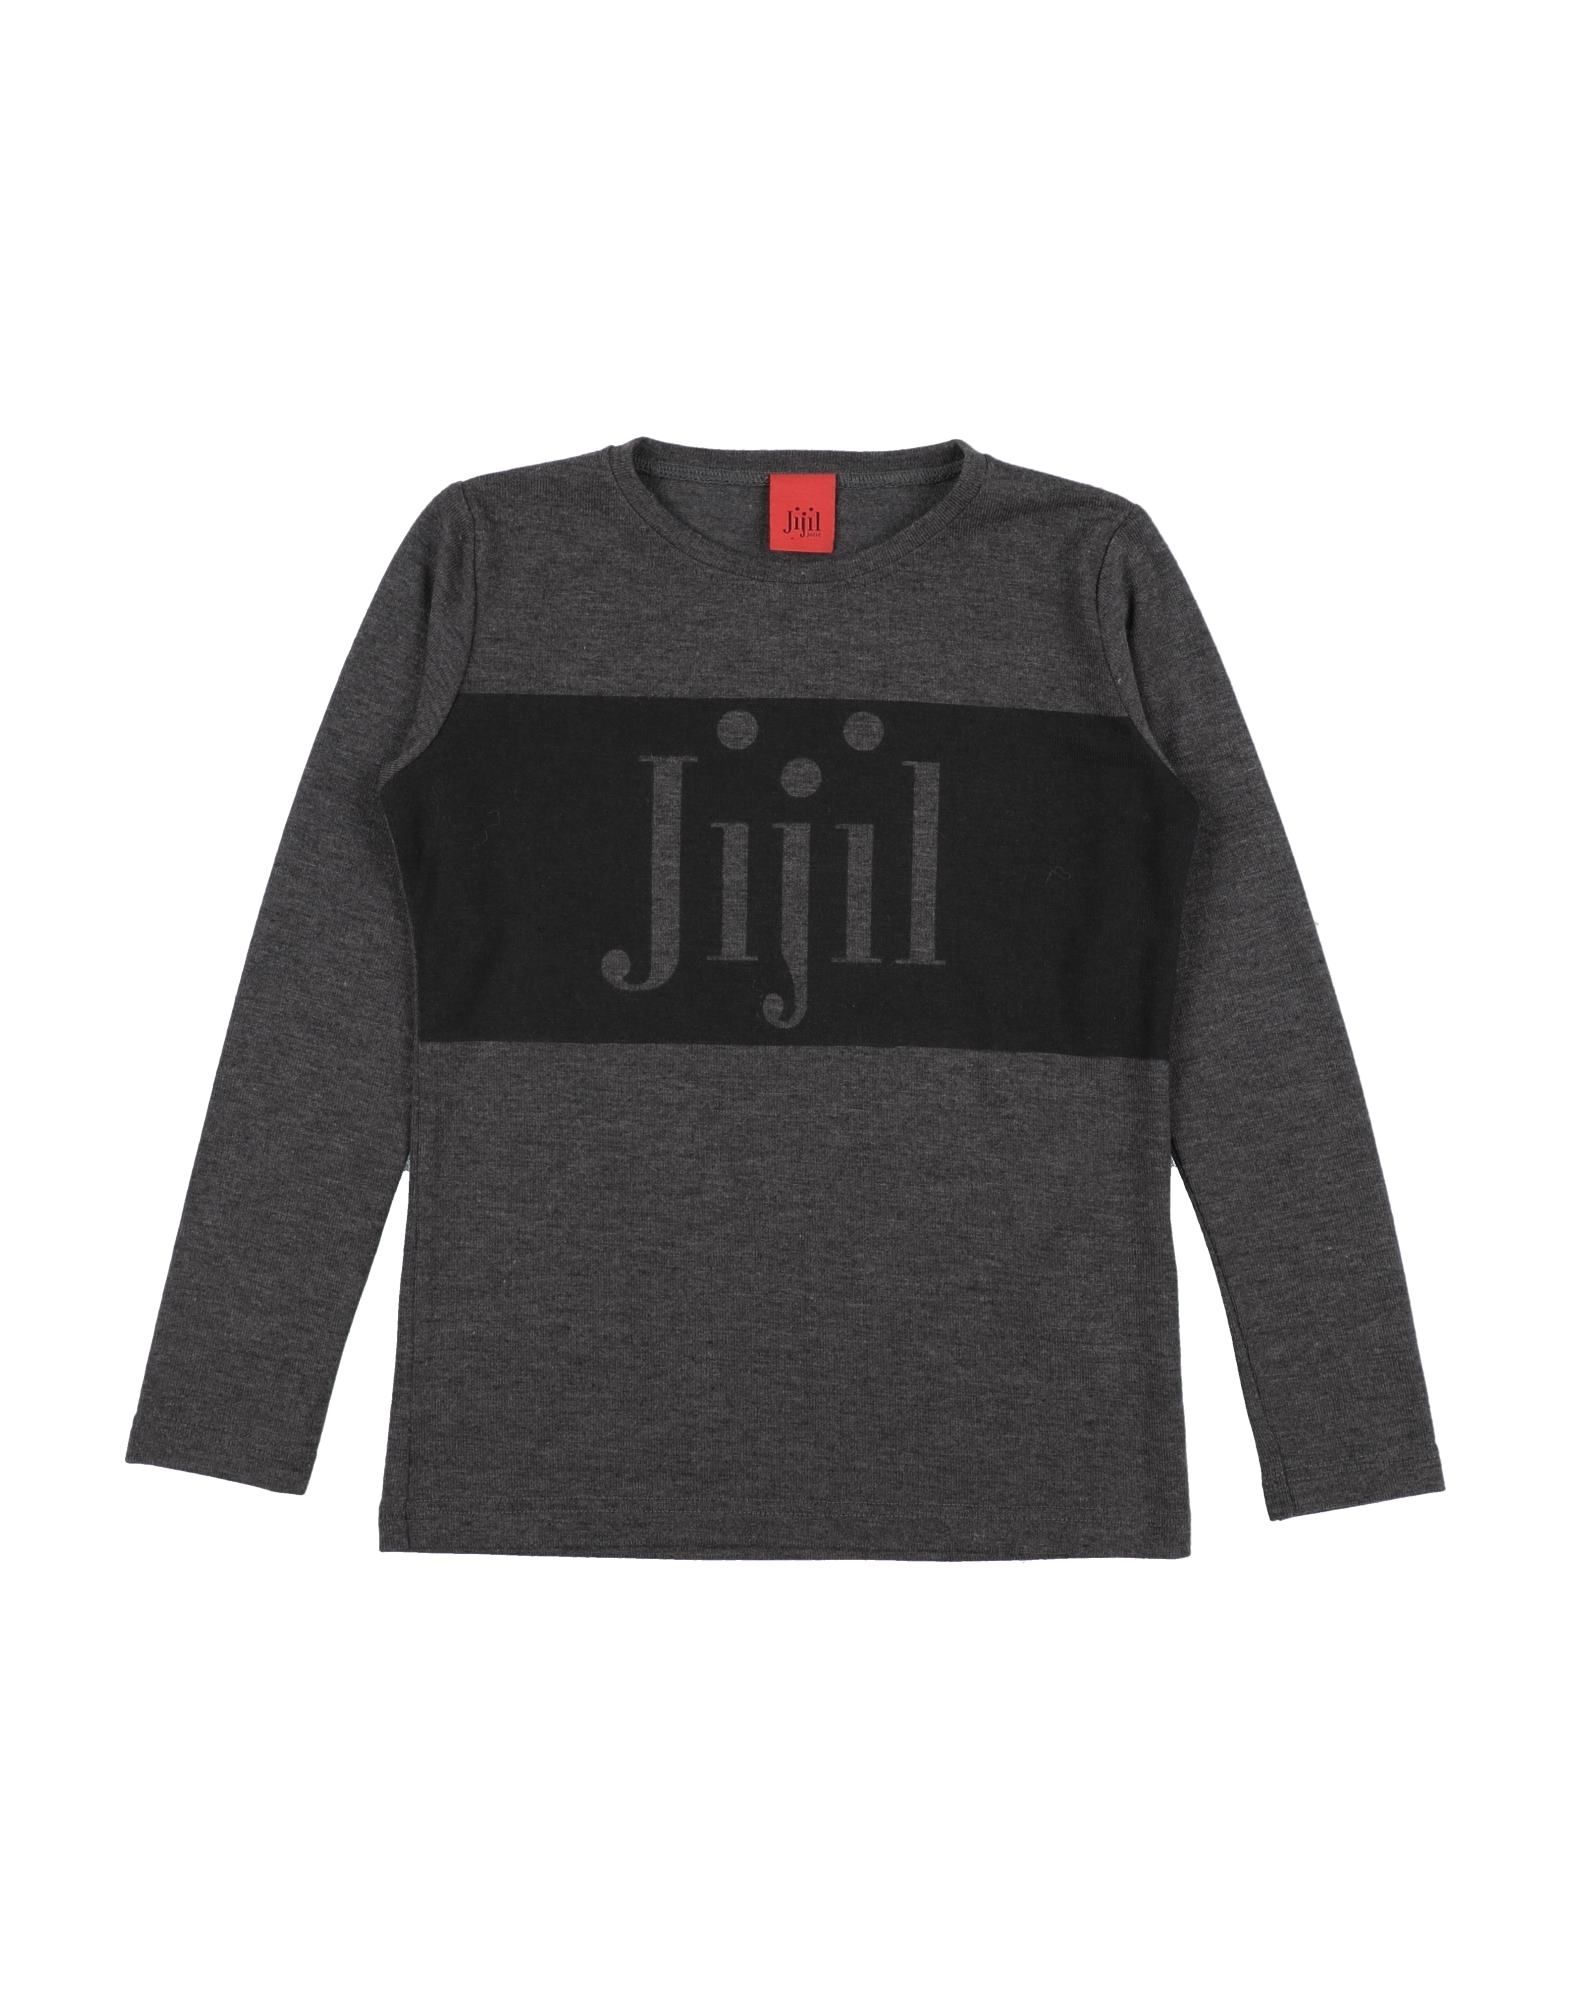 Jijil Jolie Kids' Sweaters In Grey